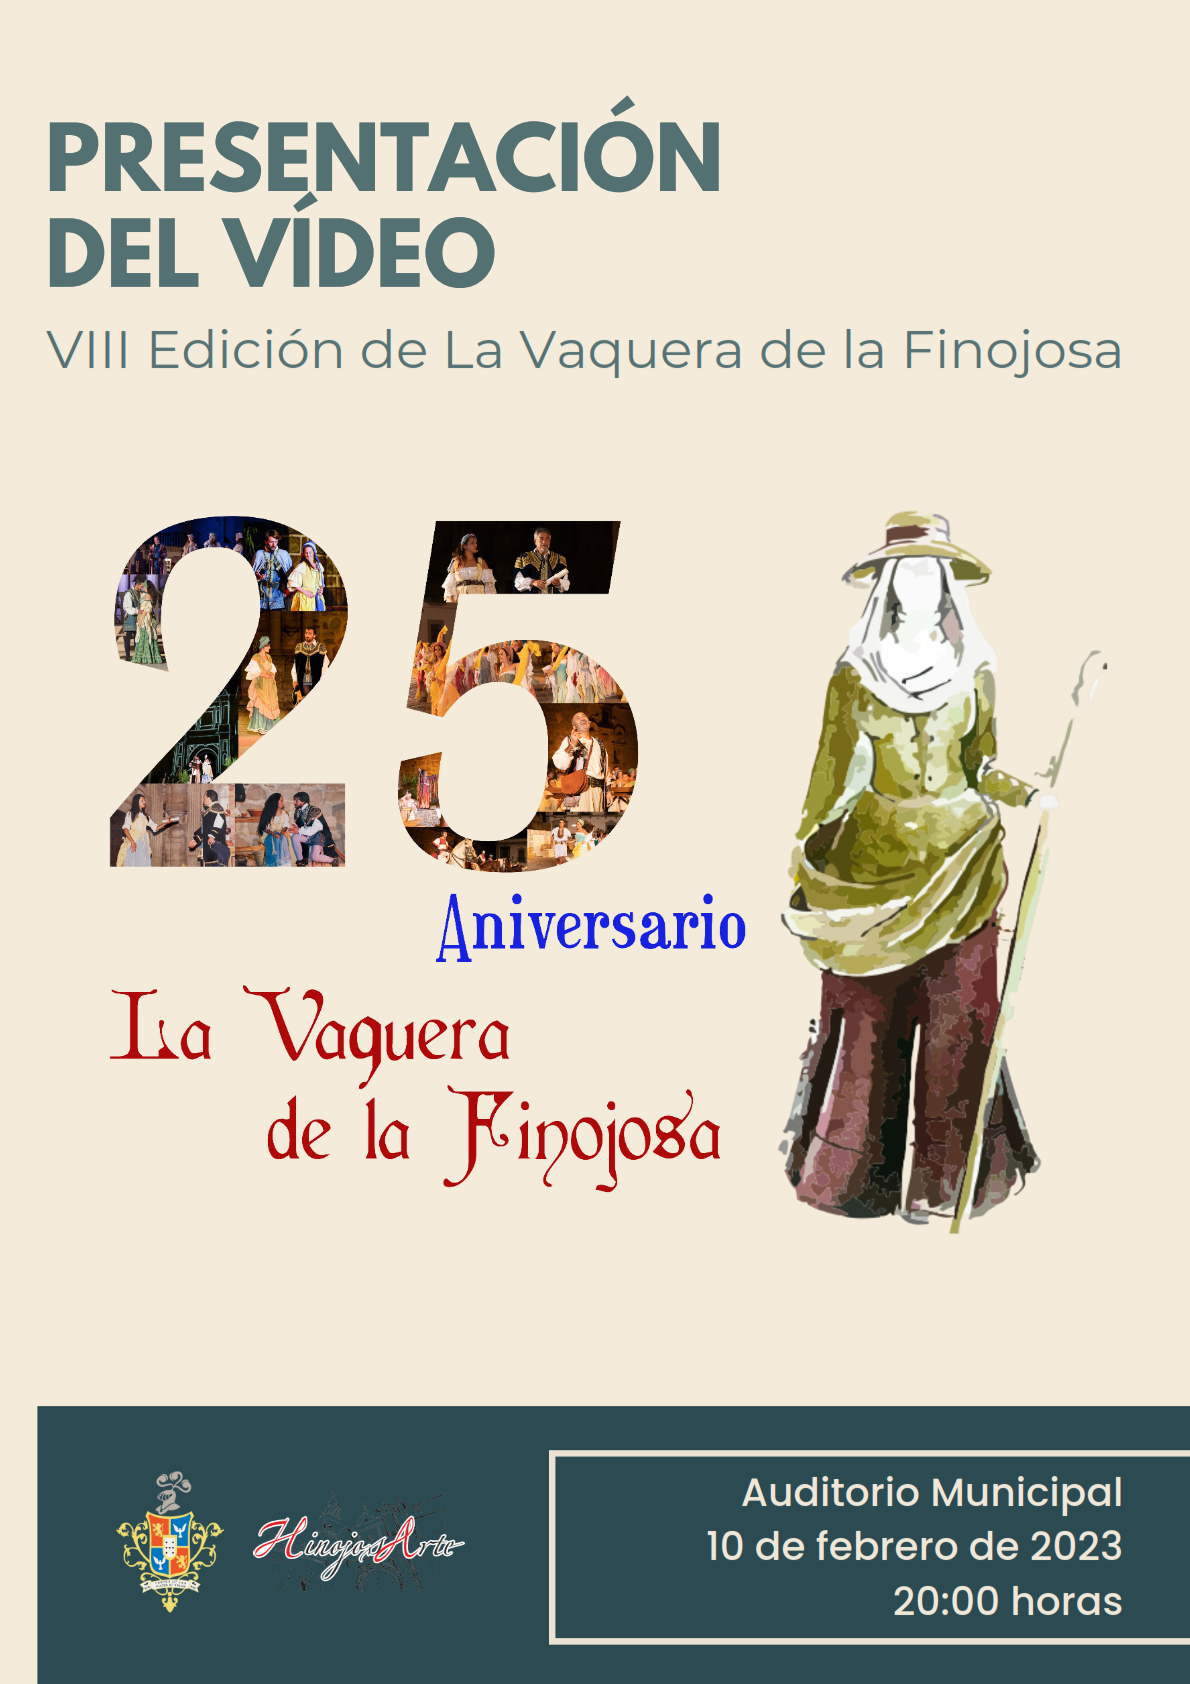 PRESENTACION-VIDEO-VAQUERA-1_001